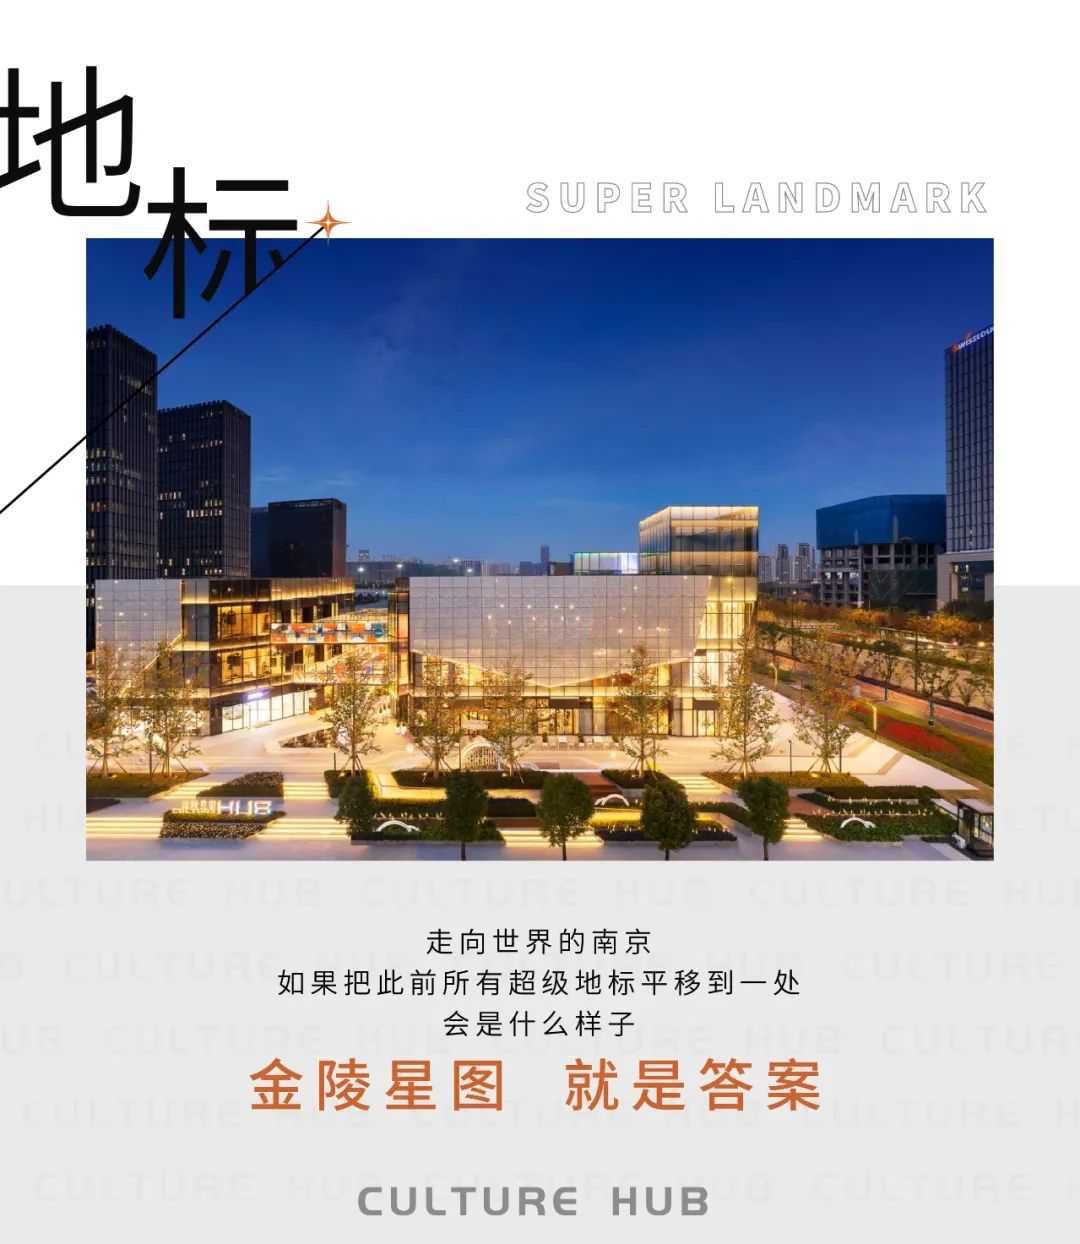 金陵星圖  一次超級資源的鏡像濃縮 一處代言南京的封面地標_中國網地産